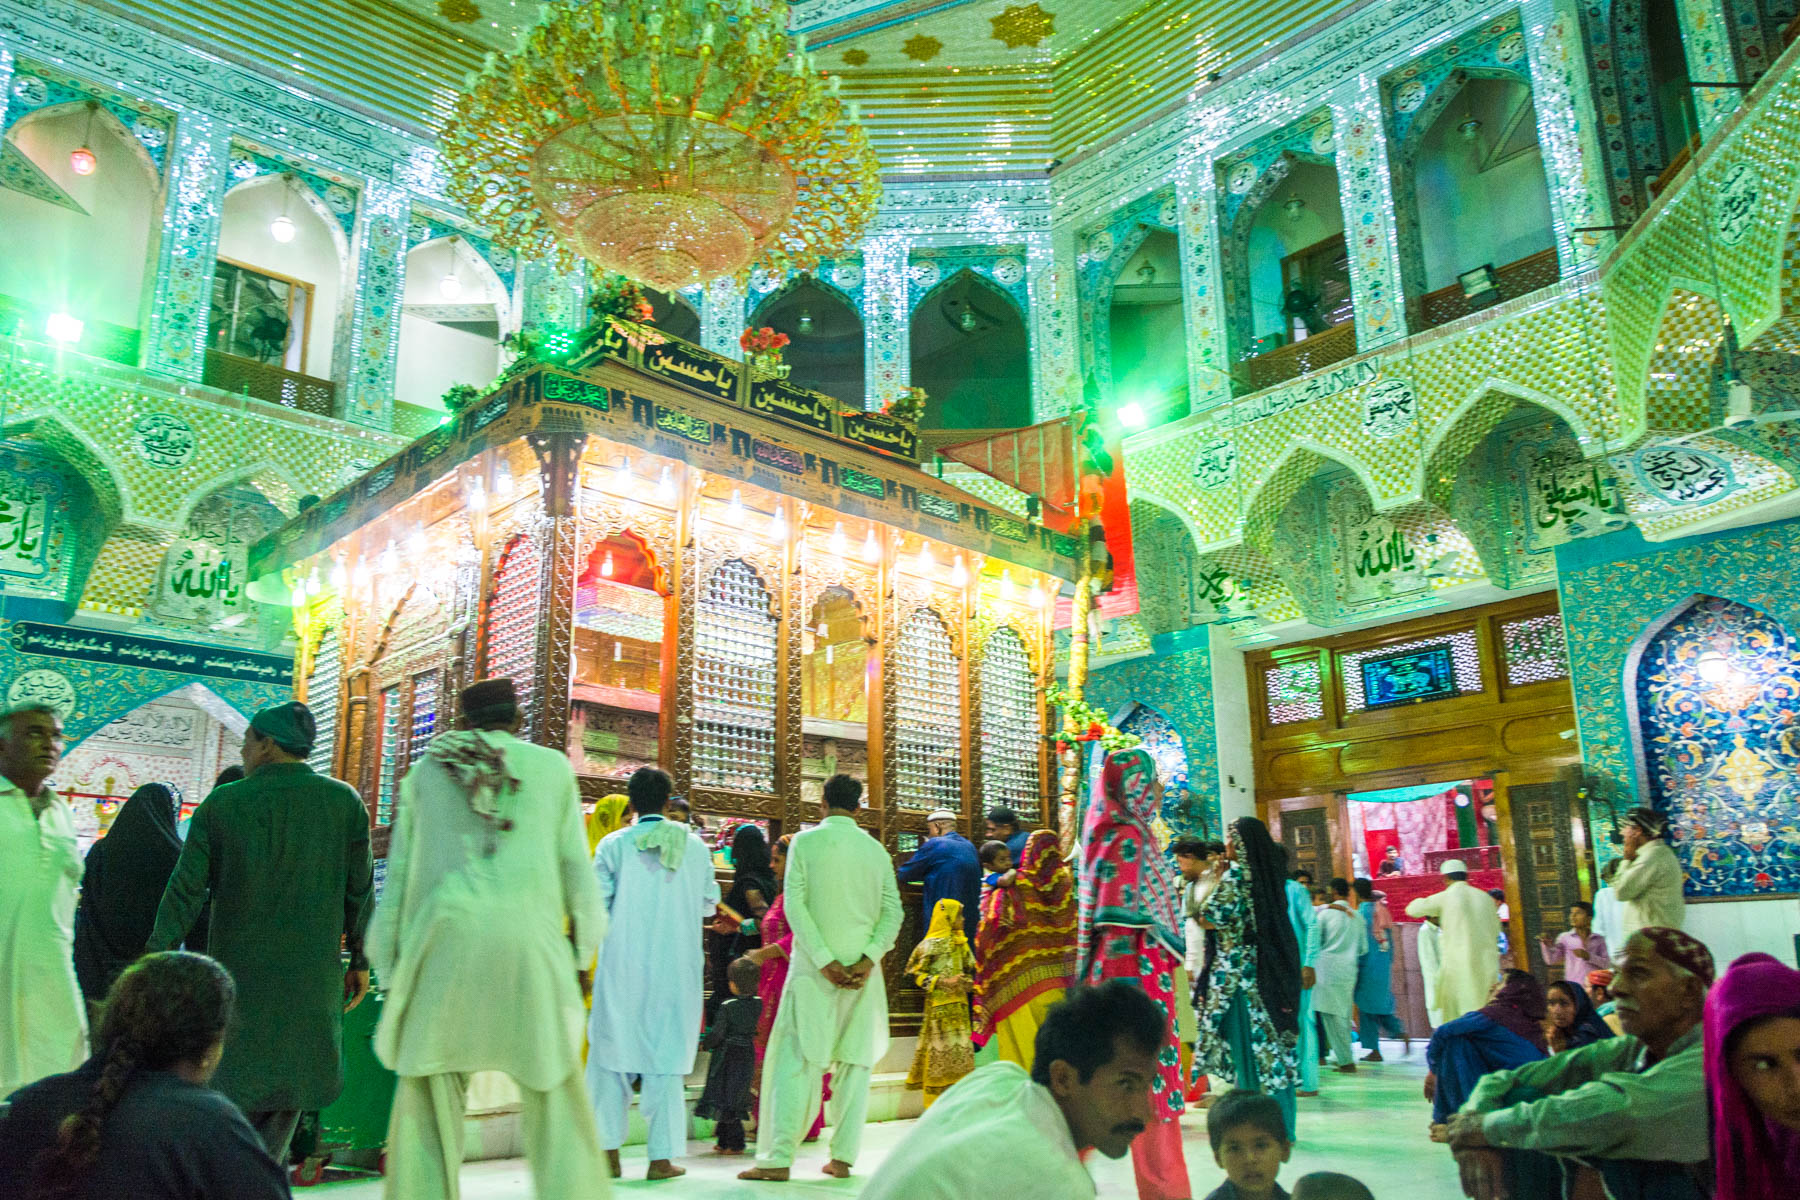 The Lal Shahbaz Qalandar shrine in Sehwan, Pakistan